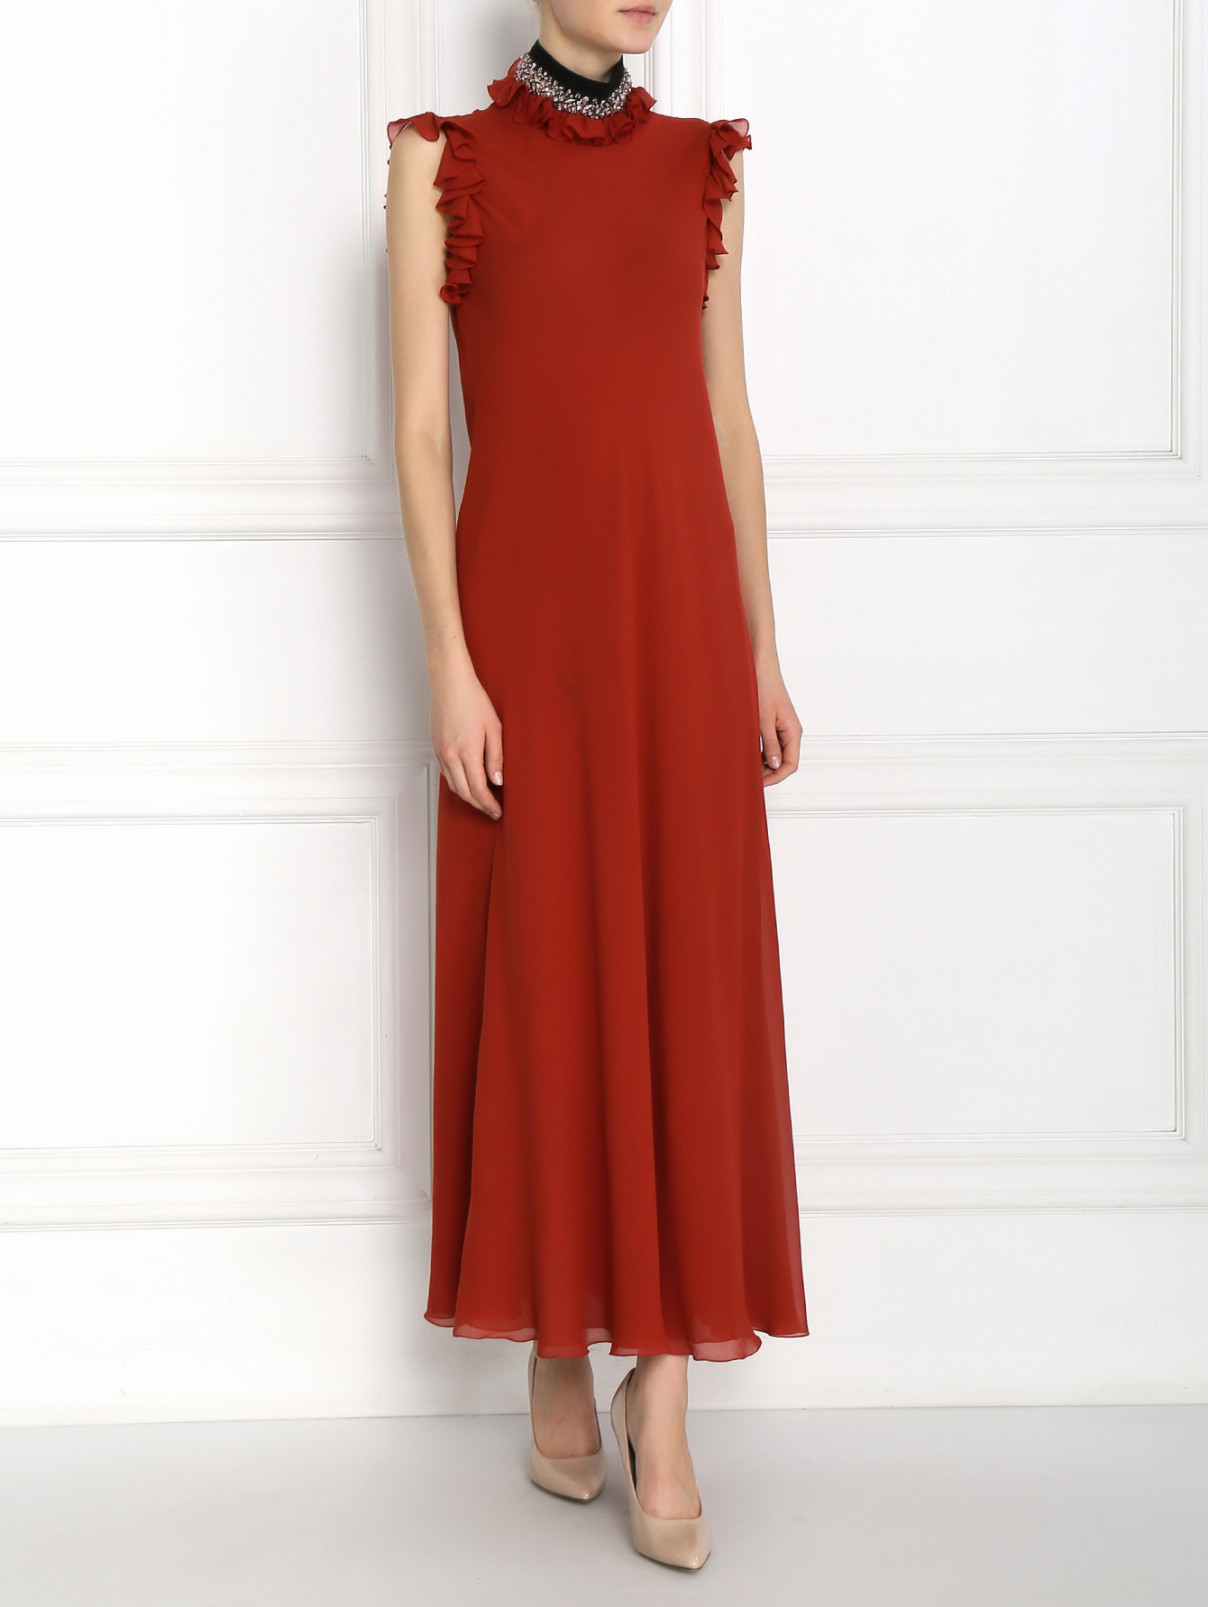 Платье-макси из шелка декорированное кристаллами Giambattista Valli  –  Модель Общий вид  – Цвет:  Красный